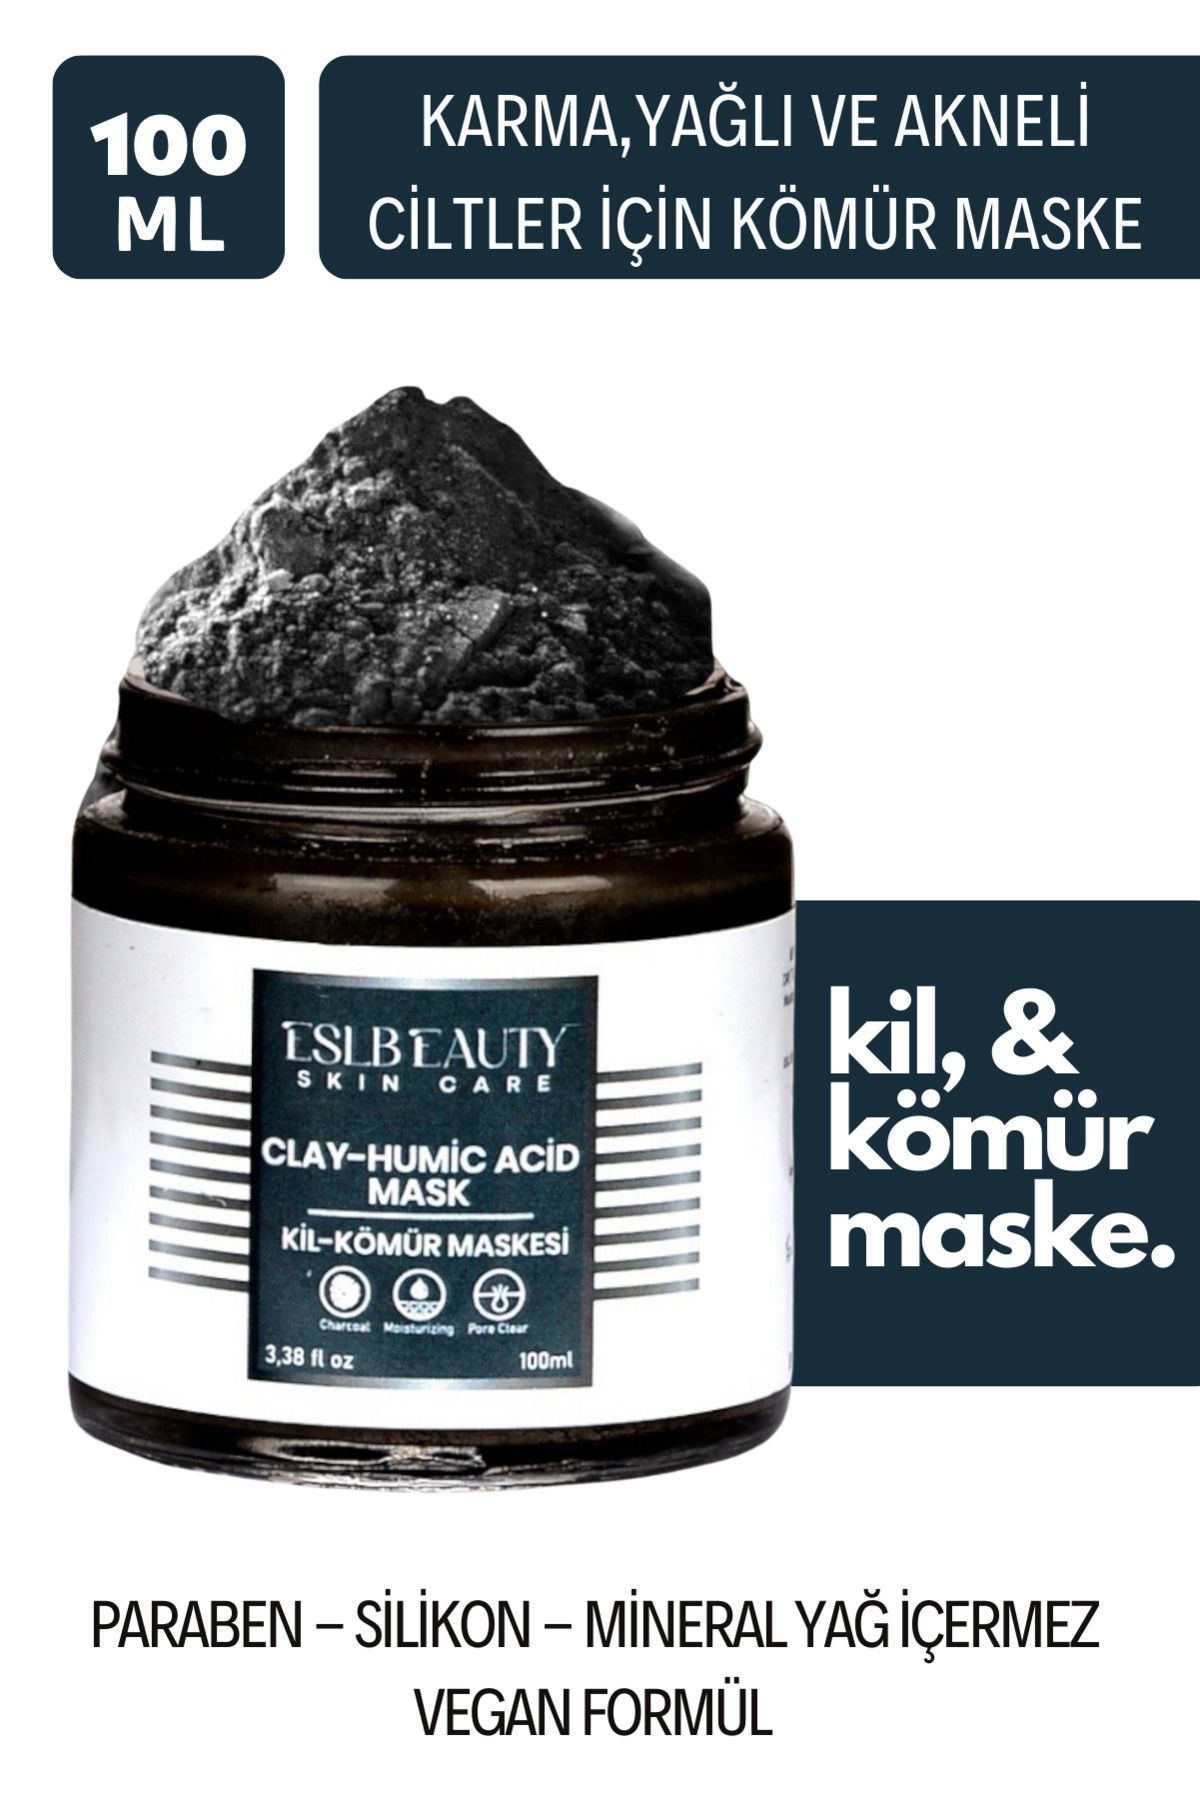 Eslbeauty Charcoal Arındırıcı Siyah Nokta Karşıtı Gözenek Sıkılaştırıcı Işıltı Veren Kil-Kömür Maske 100ml